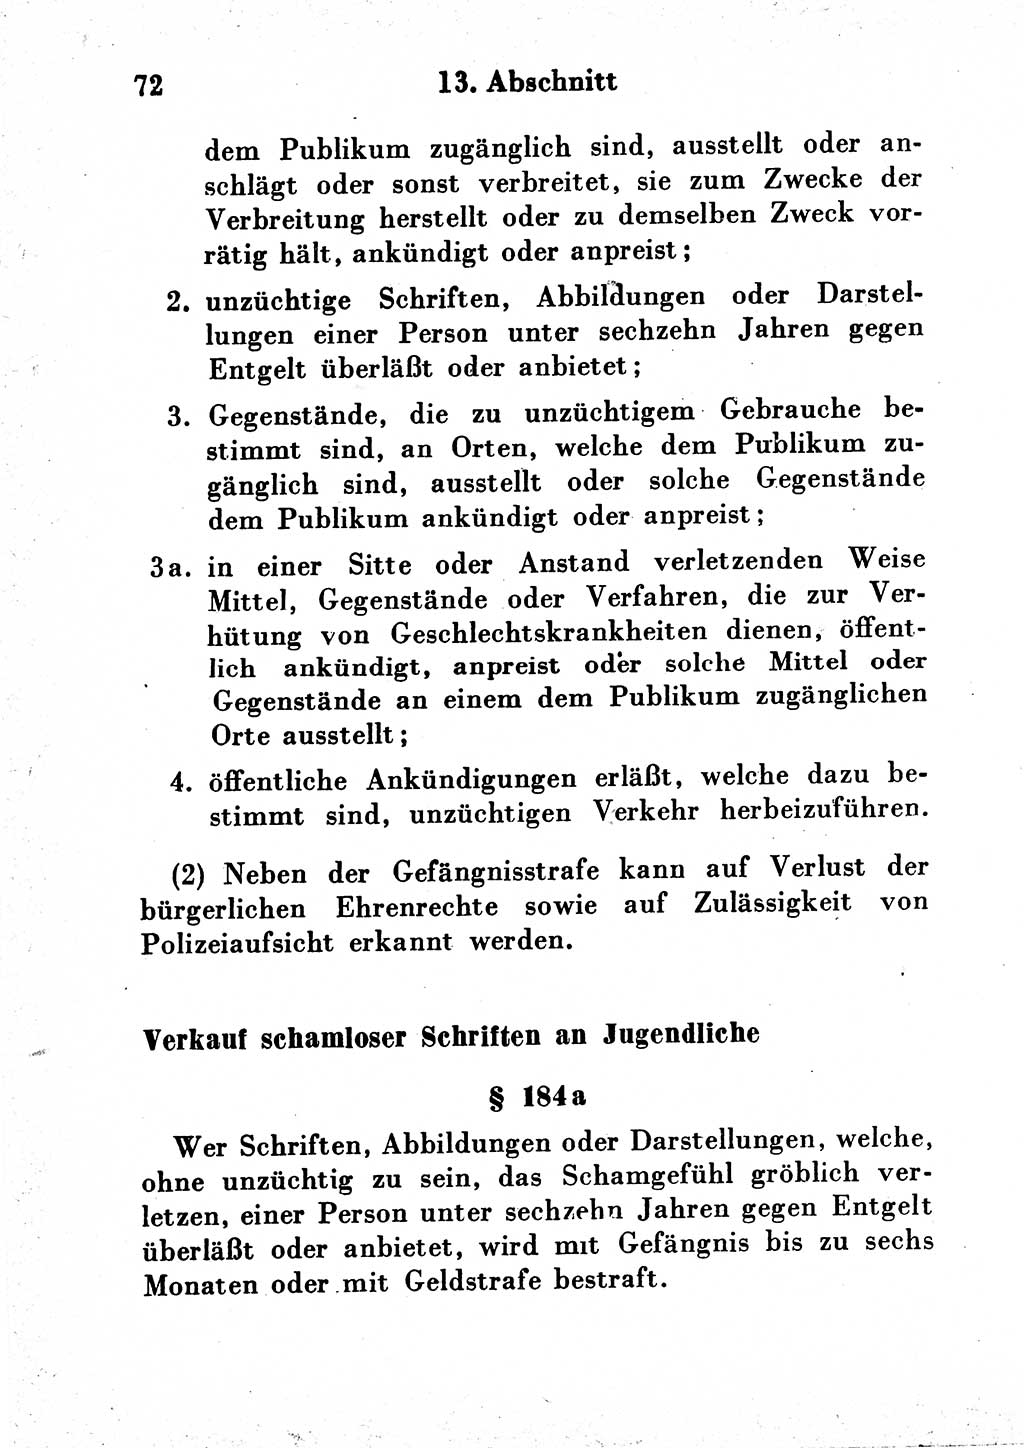 Strafgesetzbuch (StGB) und andere Strafgesetze [Deutsche Demokratische Republik (DDR)] 1954, Seite 72 (StGB Strafges. DDR 1954, S. 72)